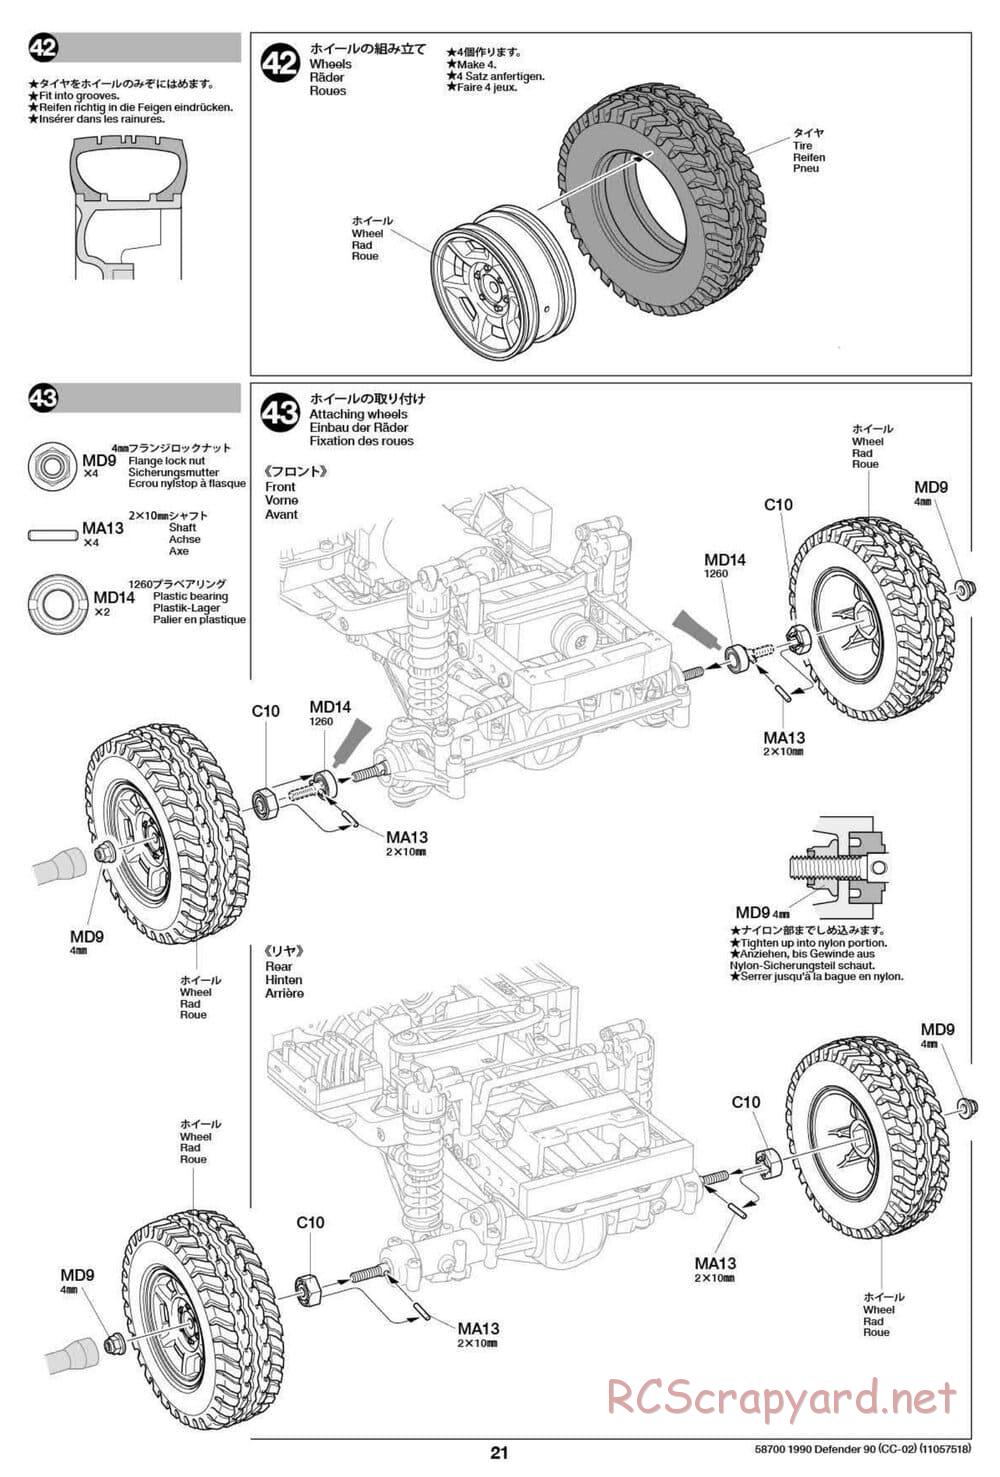 Tamiya - 1990 Land Rover Defender 90 - CC-02 Chassis - Manual - Page 21